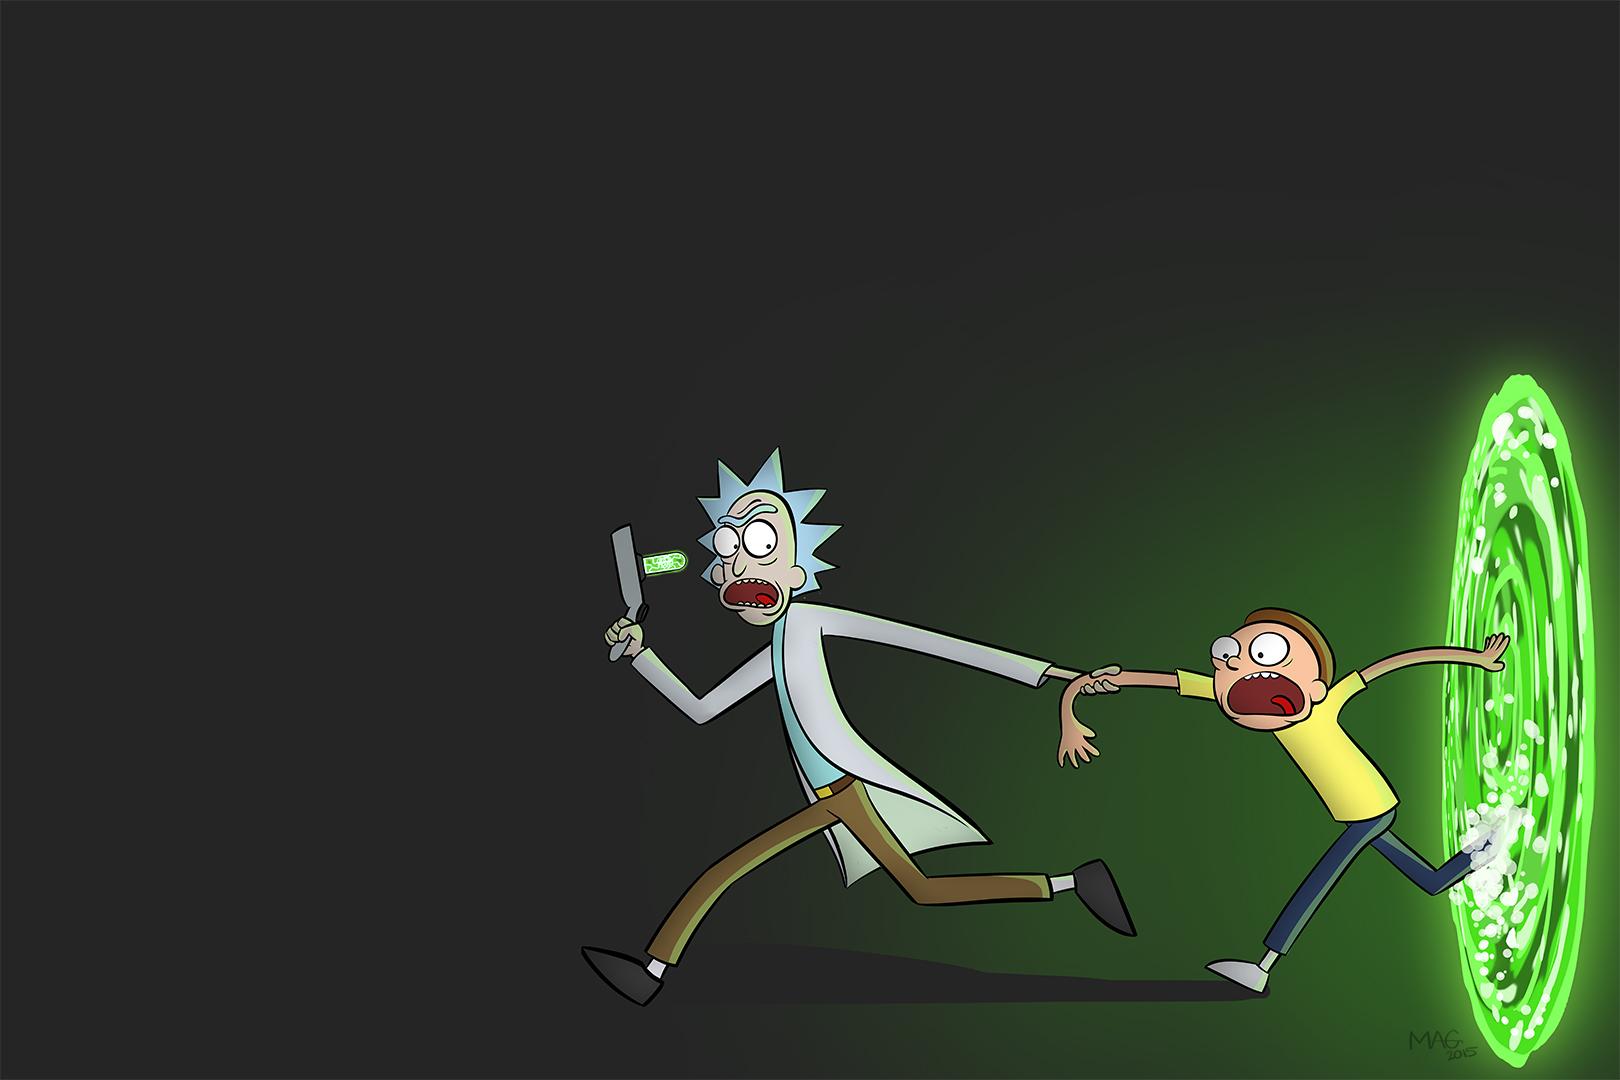 Bạn có thích những hình ảnh vui nhộn của Rick and Morty không? Nếu có, hãy tải ngay những hình nền vui nhộn của họ để trang trí cho máy tính của bạn. Bạn sẽ không thể nhịn cười khi thấy nó trên màn hình của mình.